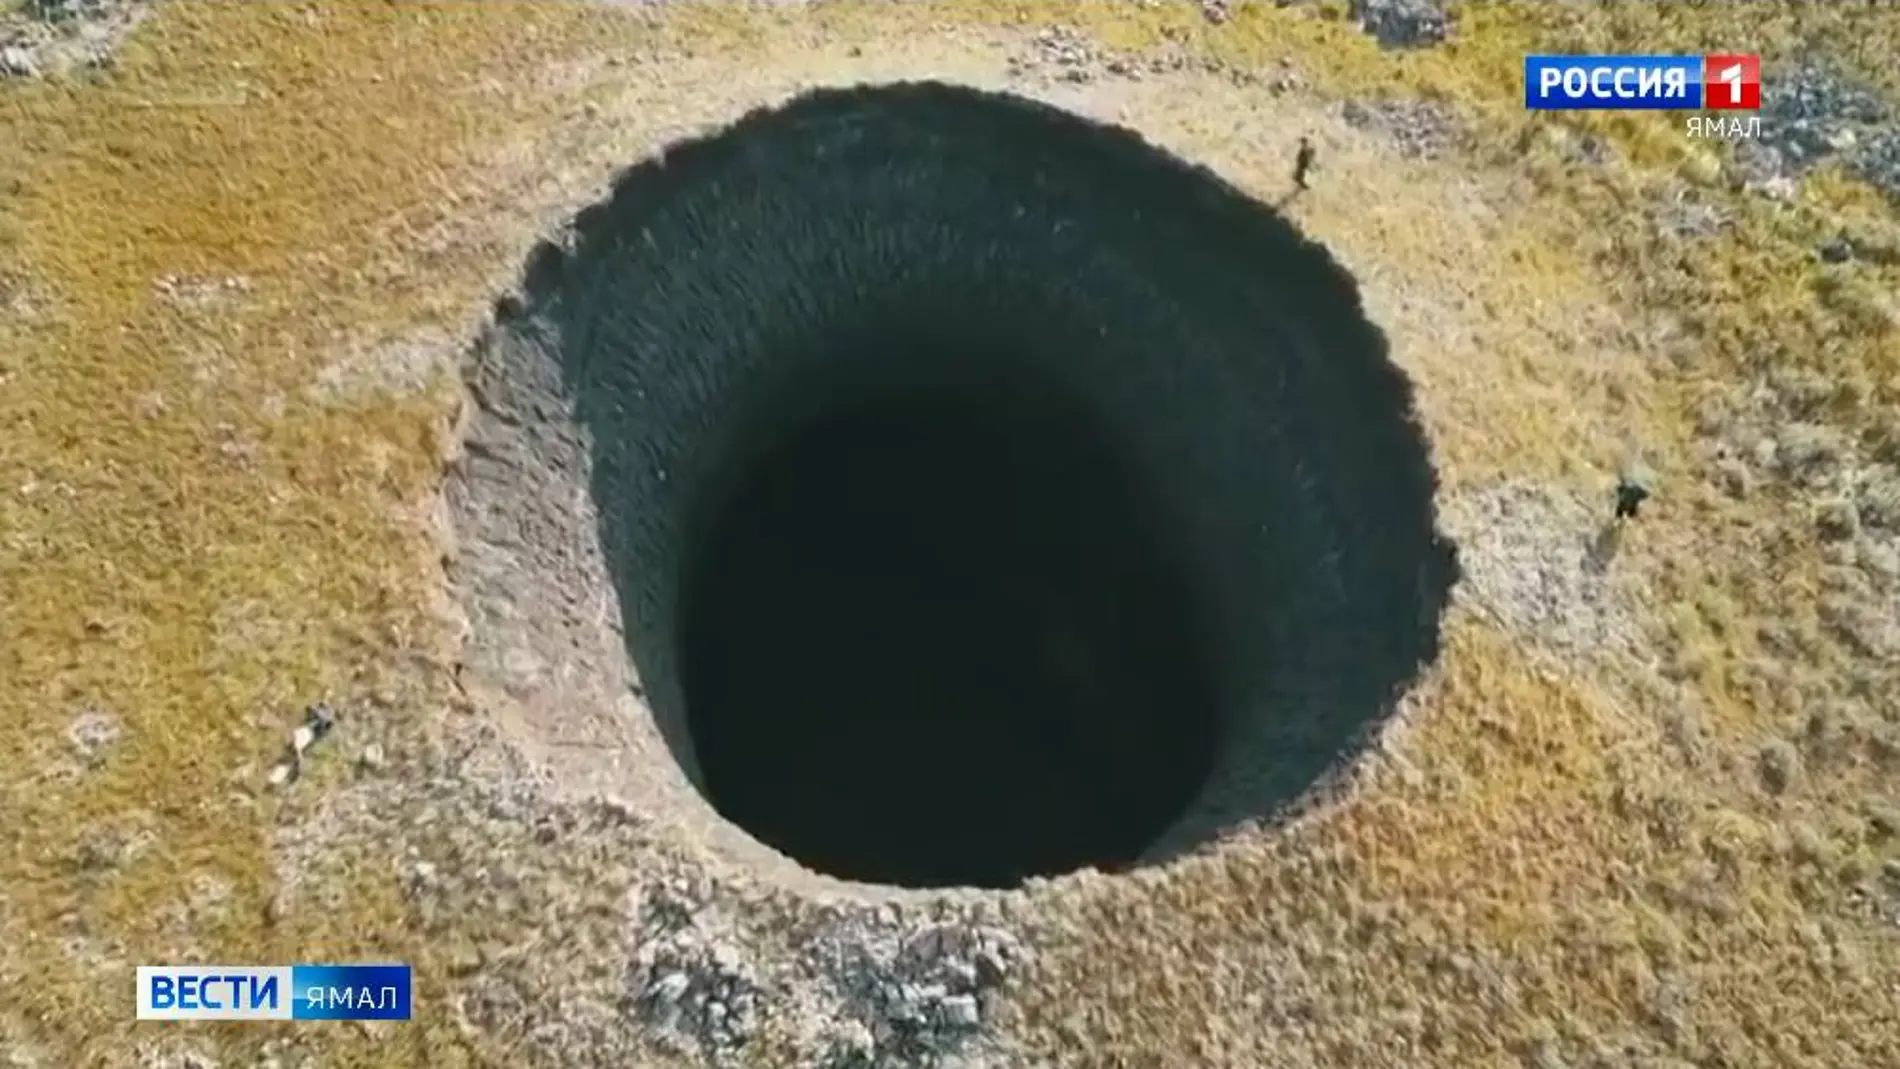 Descubren un gran cráter de 50 metros de profundidad en Siberia